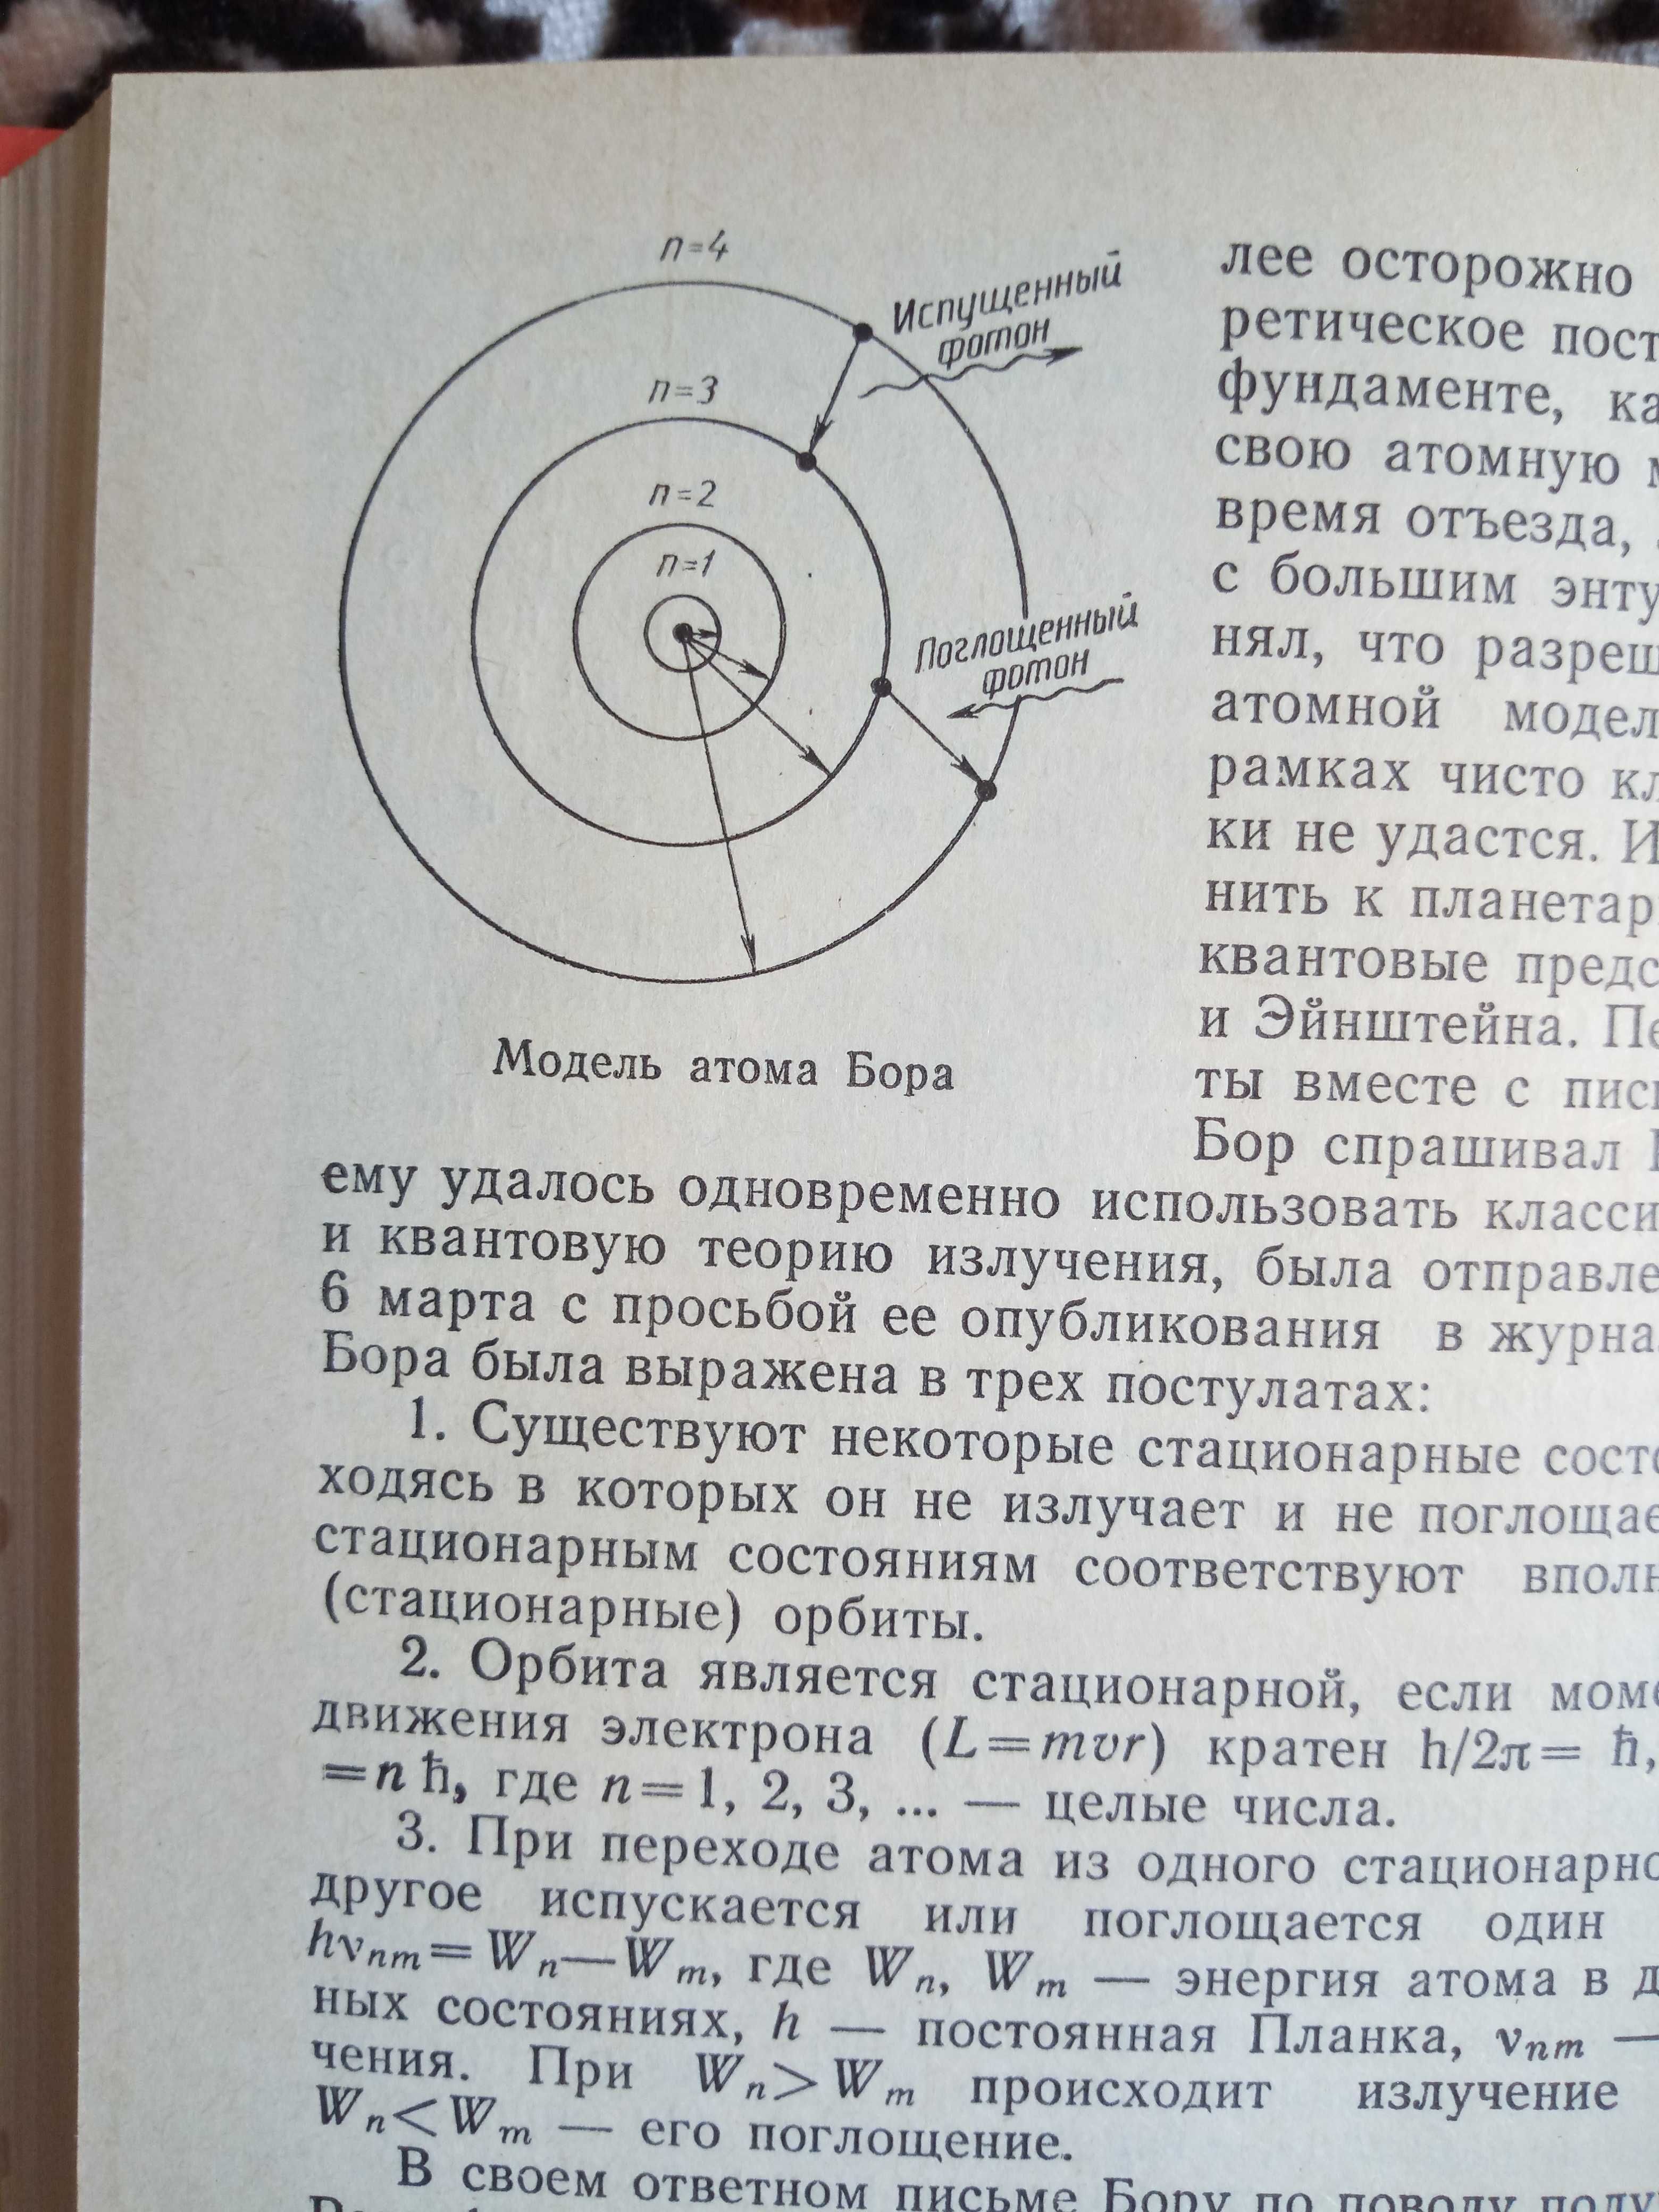 Ф.М. Дягилев "Из истории физики и жизни ее творцов".